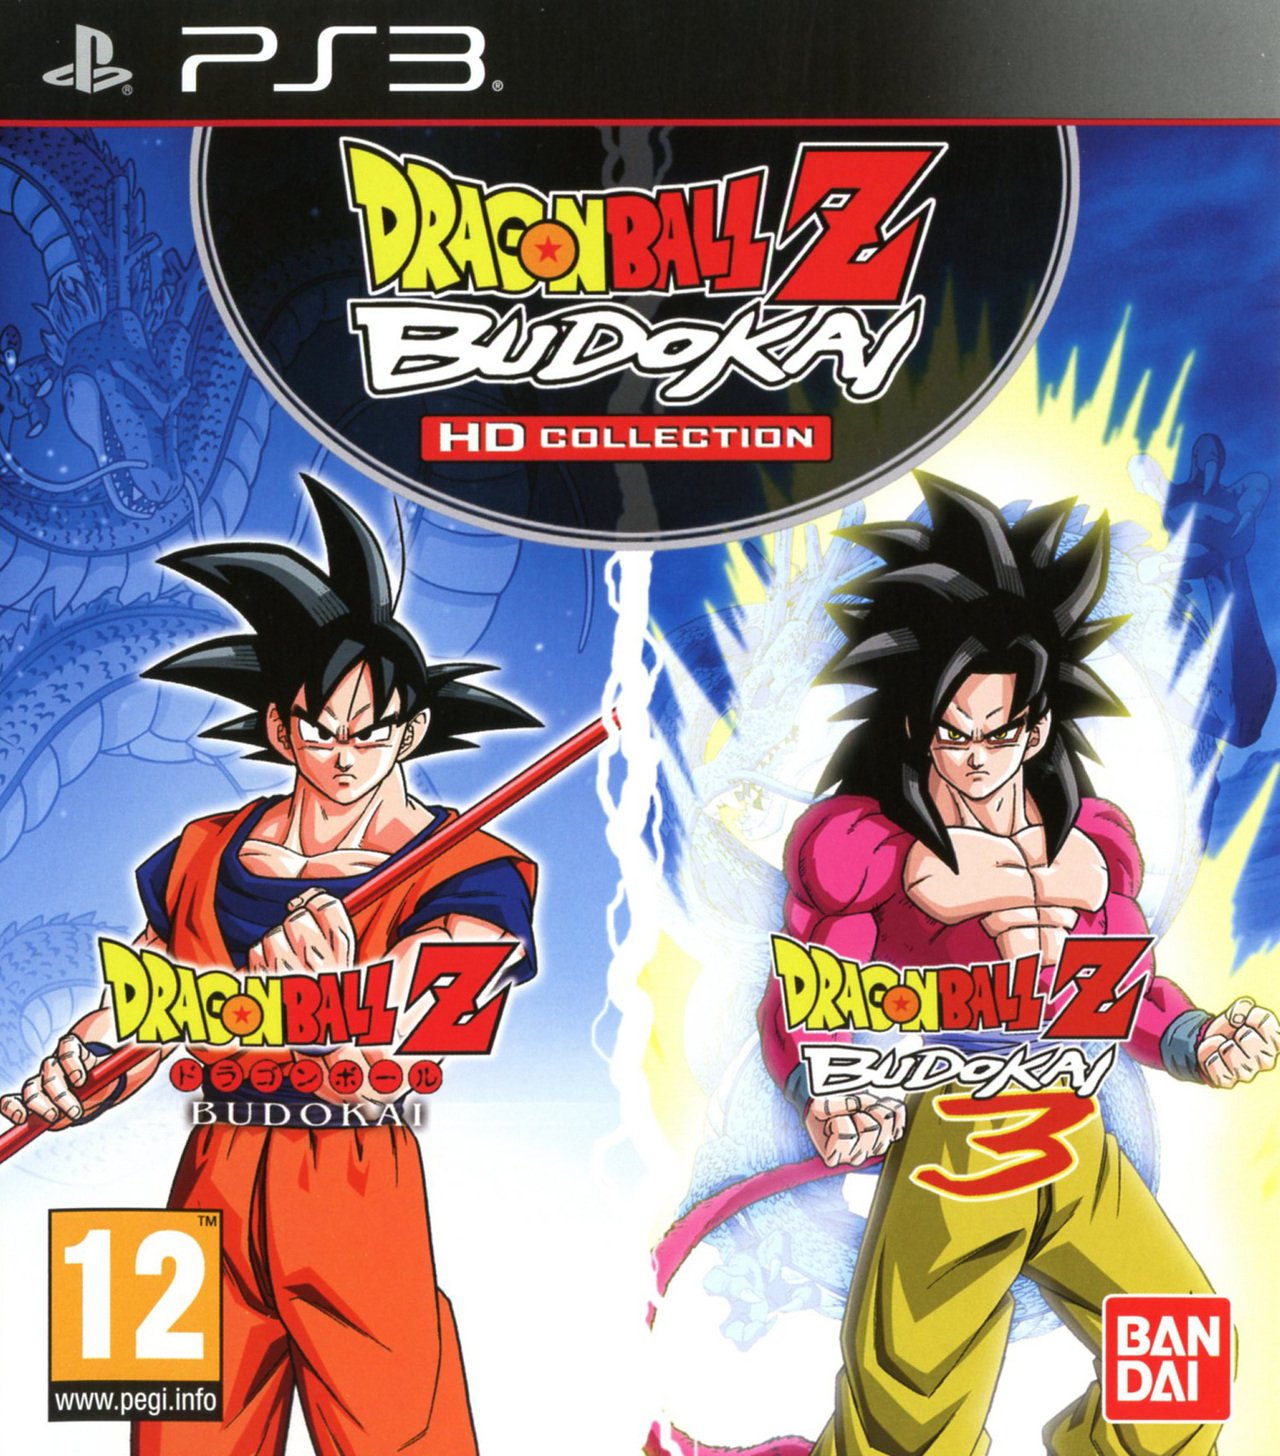 Caratula de Dragon Ball Z Budokai HD Collection para PlayStation 3